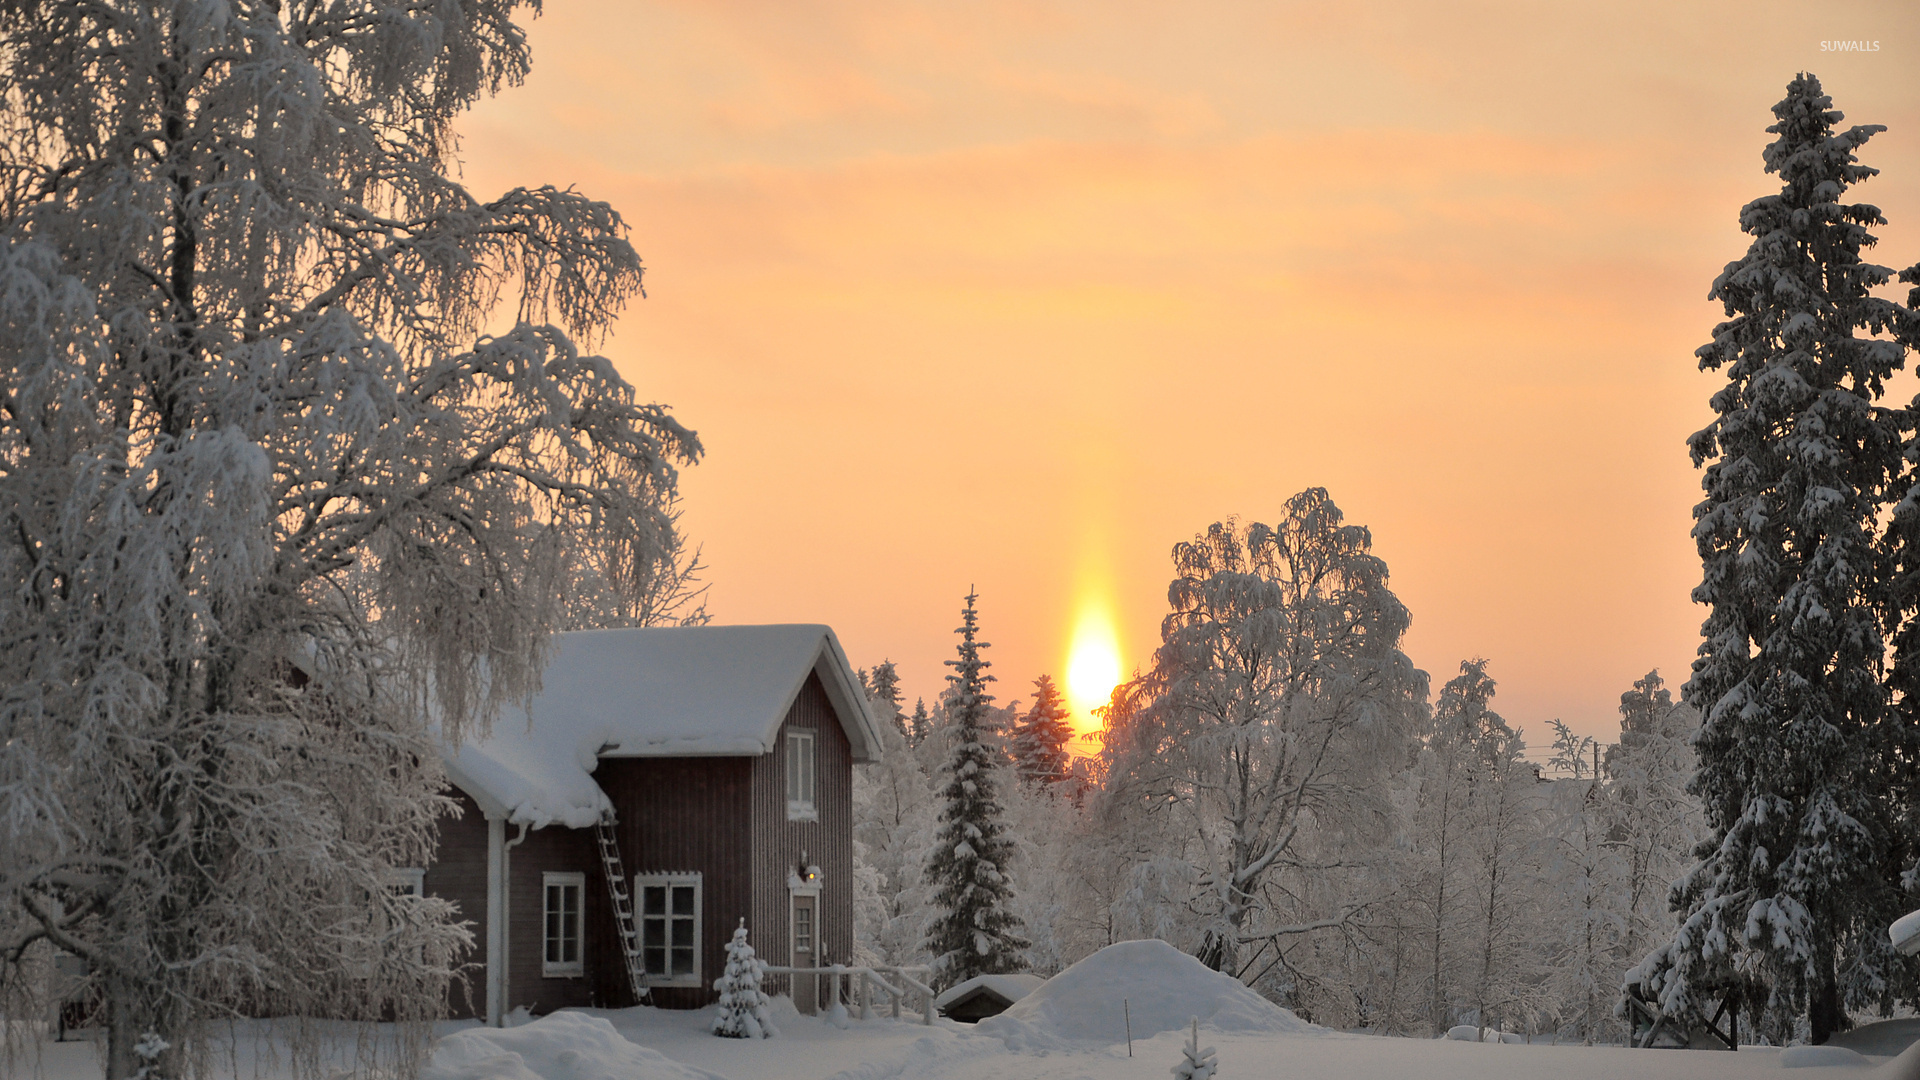 Скачать обои бесплатно Зима, Снег, Дерево, Фотографии, Закат Солнца картинка на рабочий стол ПК